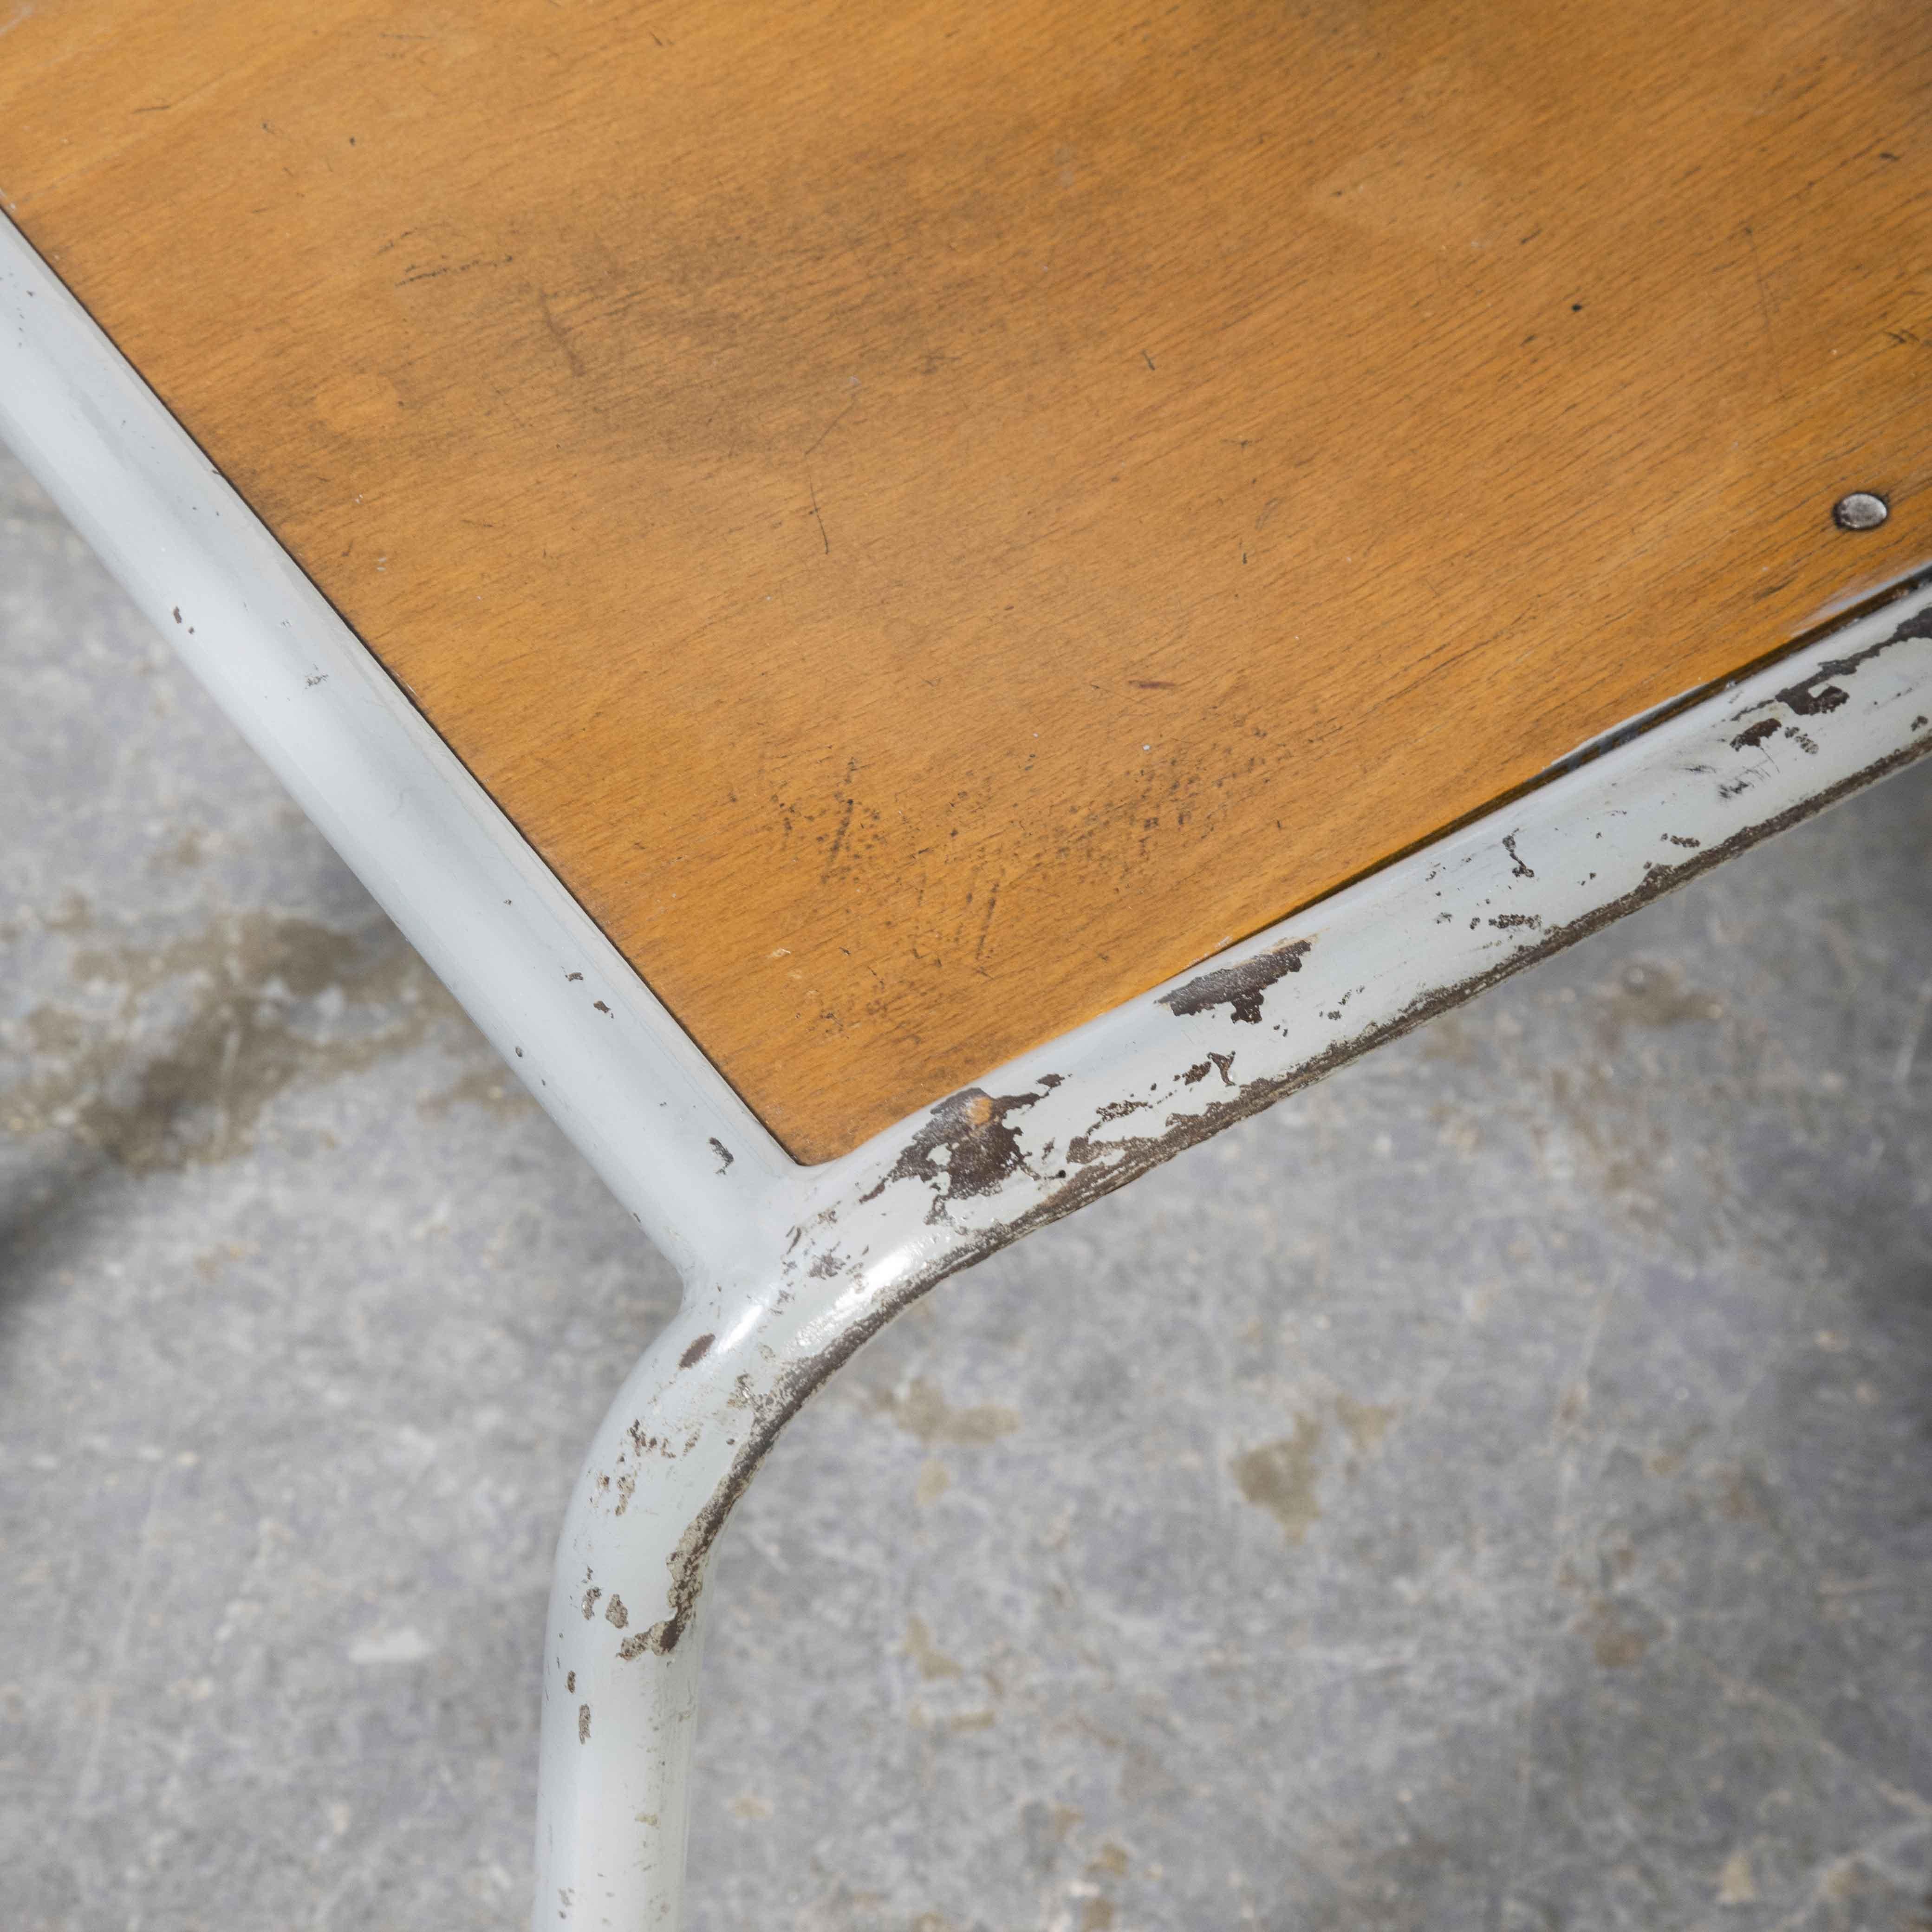 1950's French Mullca Stapel-Esszimmerstühle grau mit Holzsitz - Satz von acht

1950's French Mullca Stapel-Esszimmerstühle grau mit Holzsitz - Satz von acht. Robert Muller und Gaston Cavaillon, einer unserer beliebtesten Hersteller, gründeten 1947